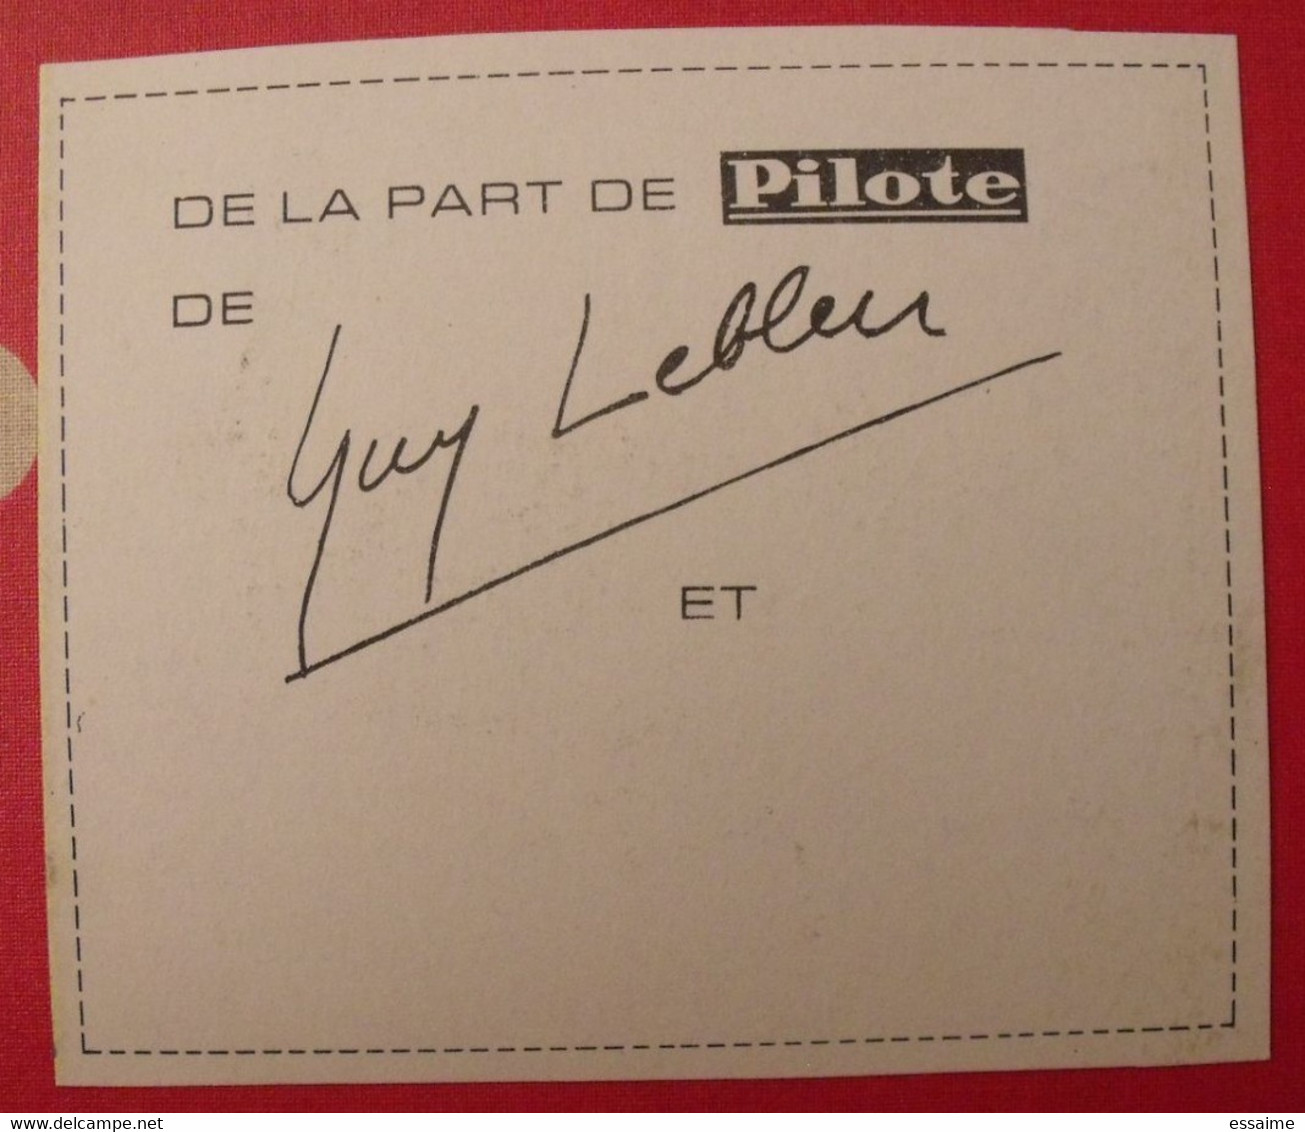 Guy Lebleu. Carte De Voeux 1967. Supplément Au N° 372 De Pilote. - Pilote